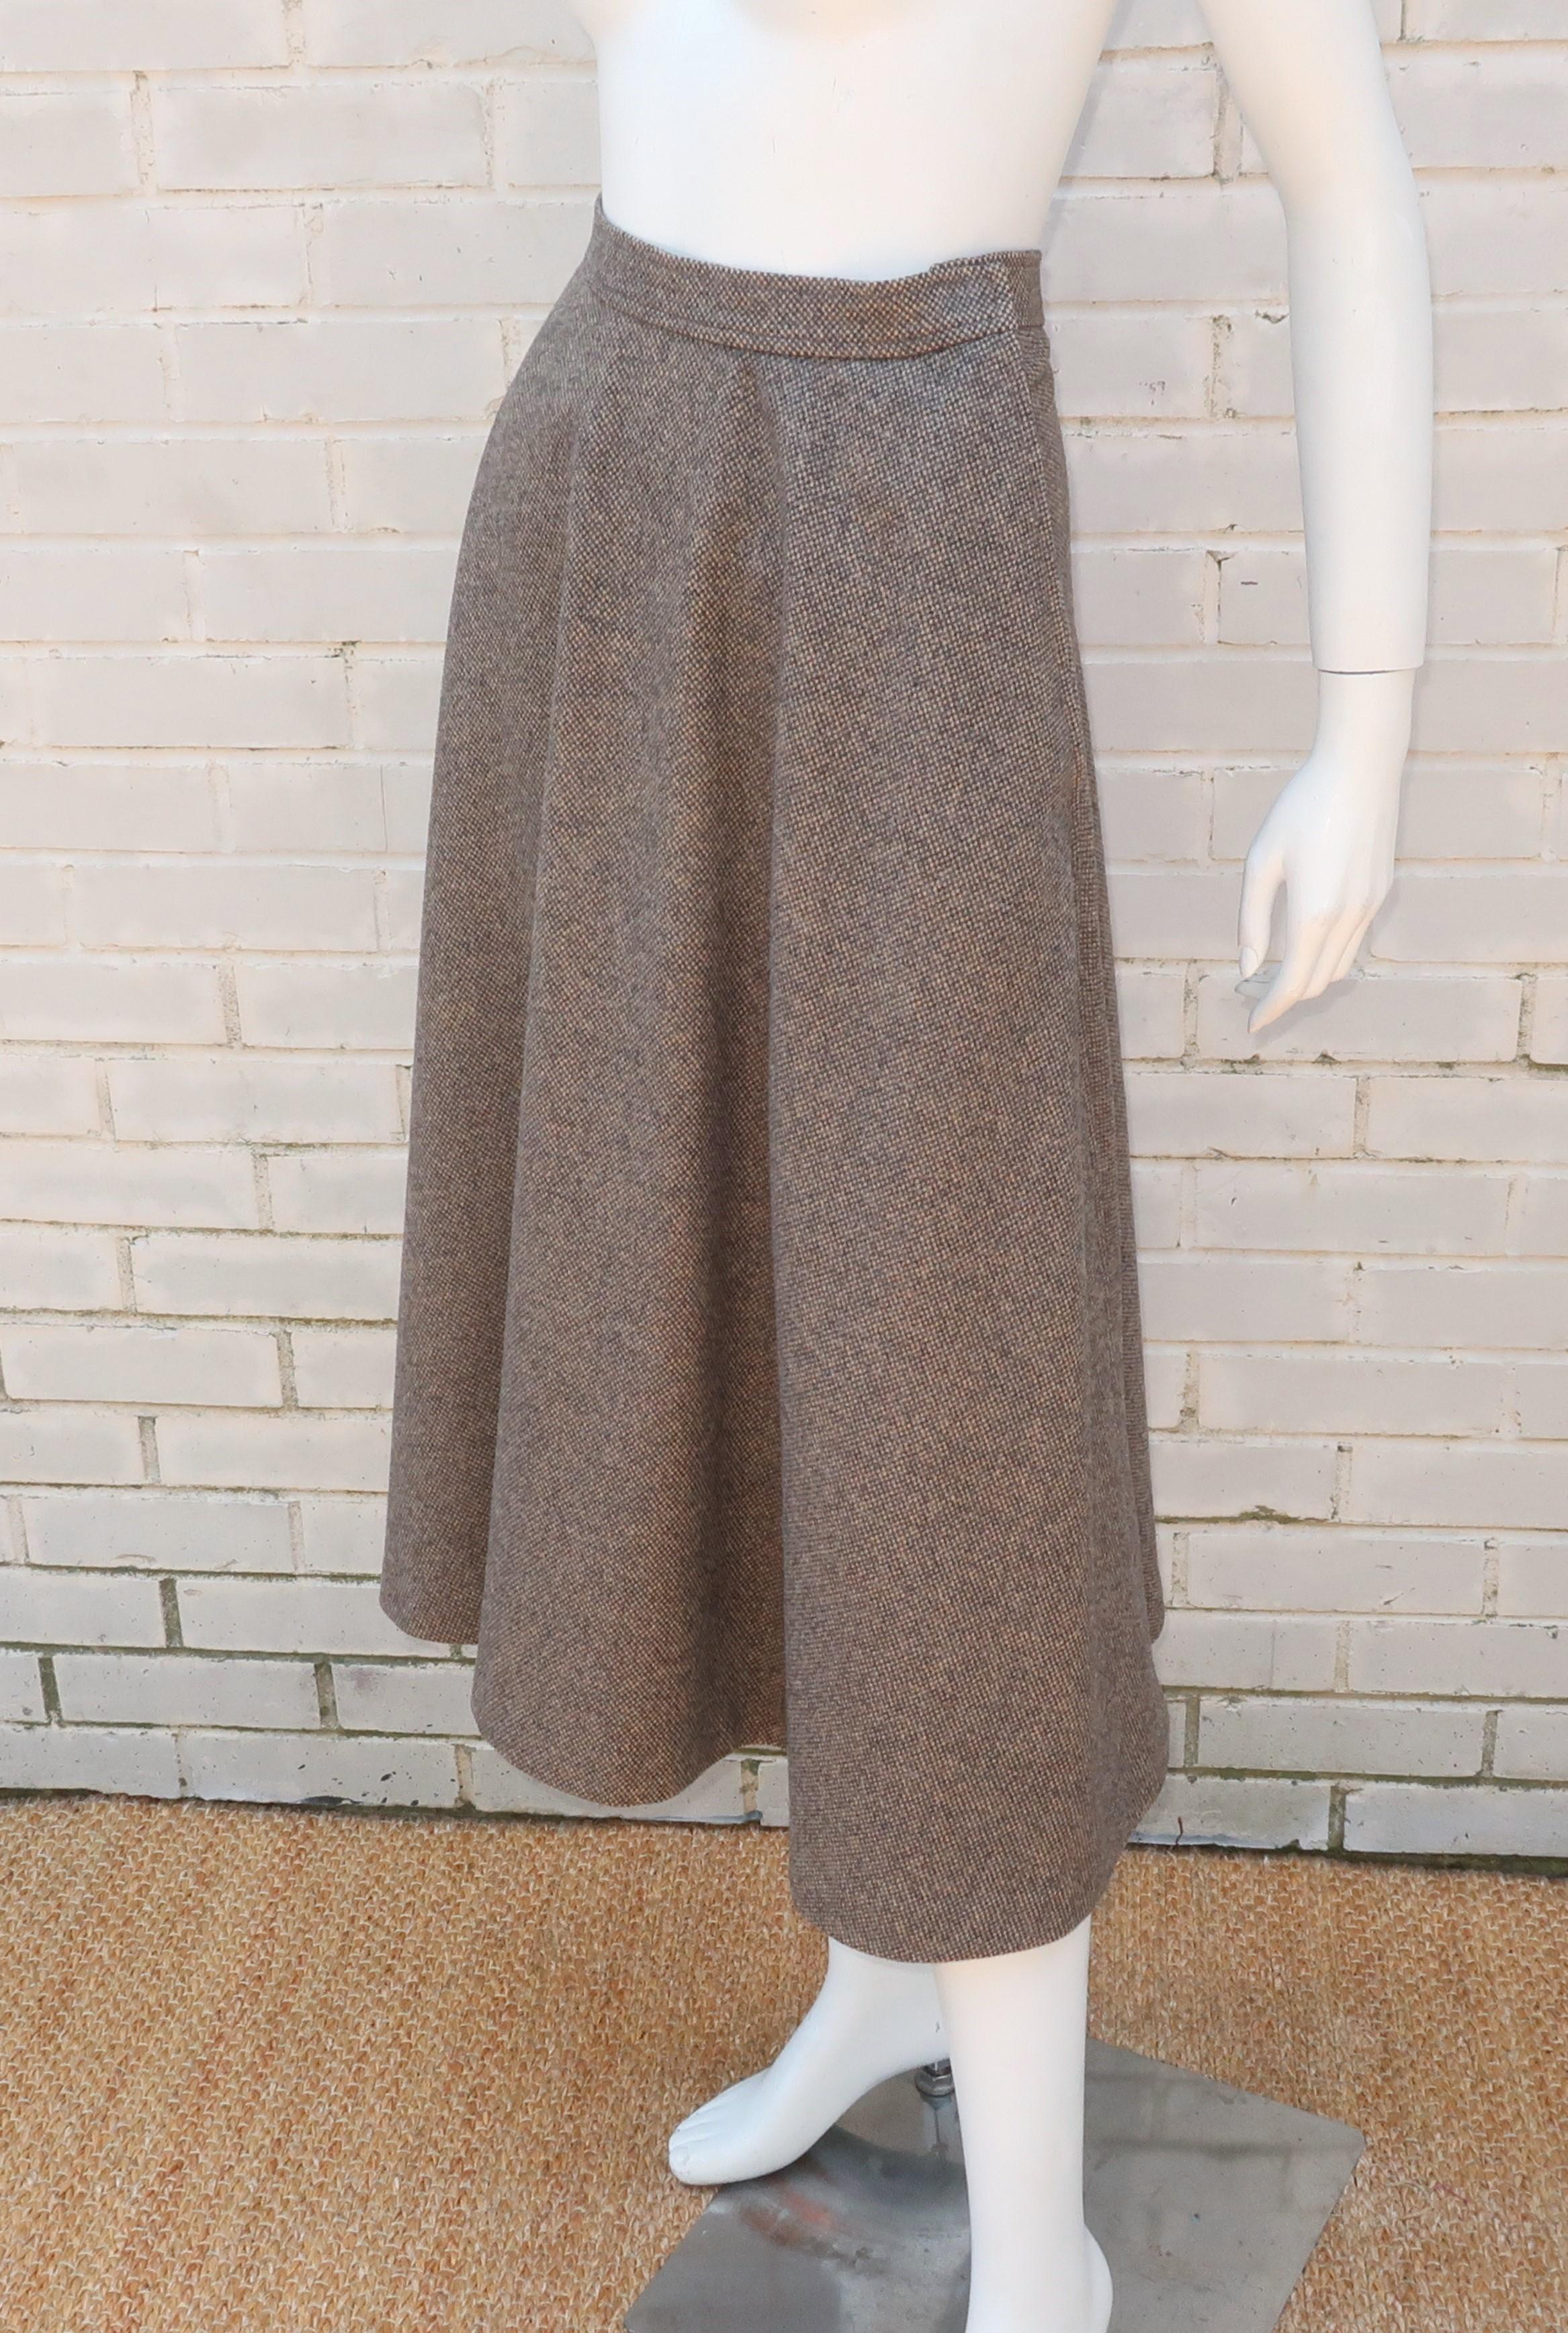 Yves Saint Laurent Gray & Tan Tweed Wool Skirt, 1970's 2